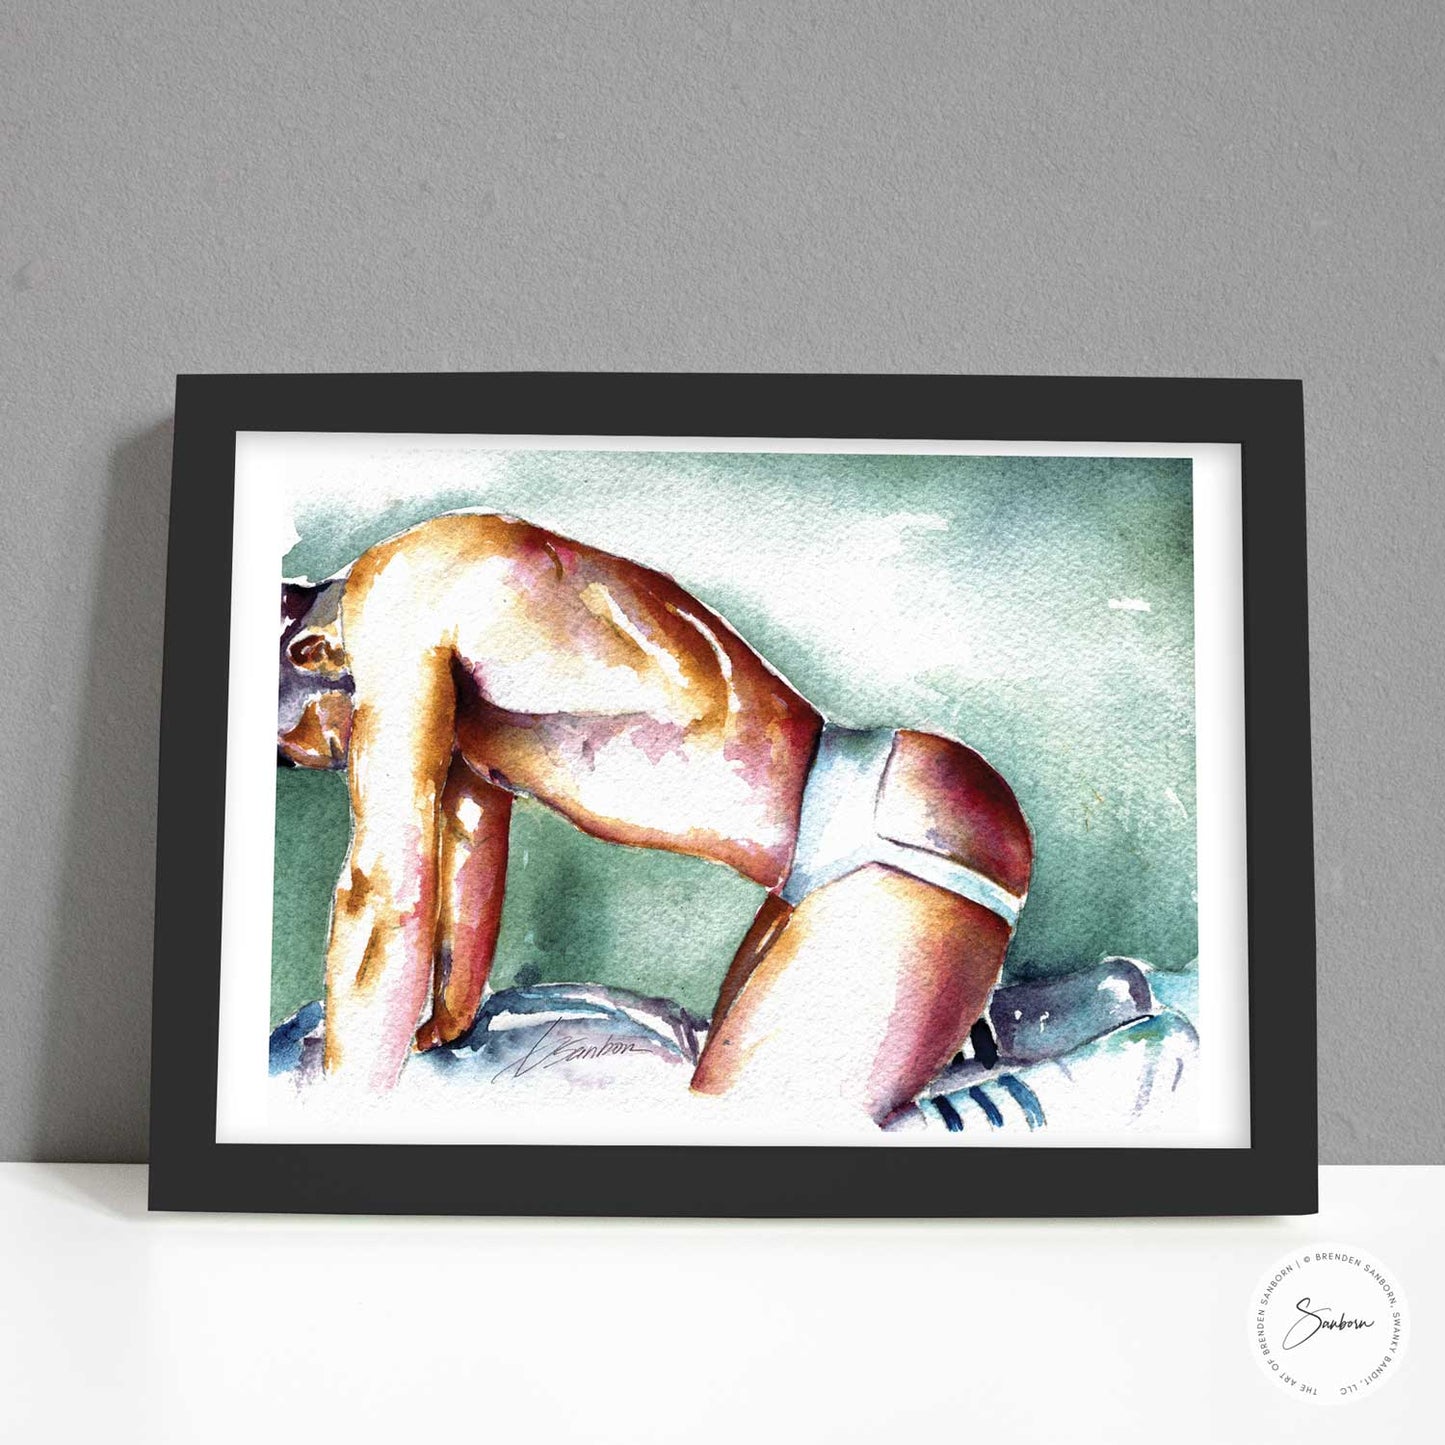 Male Nude Art Print of Muscular Figure in Jock Strap - Giclee Art Print